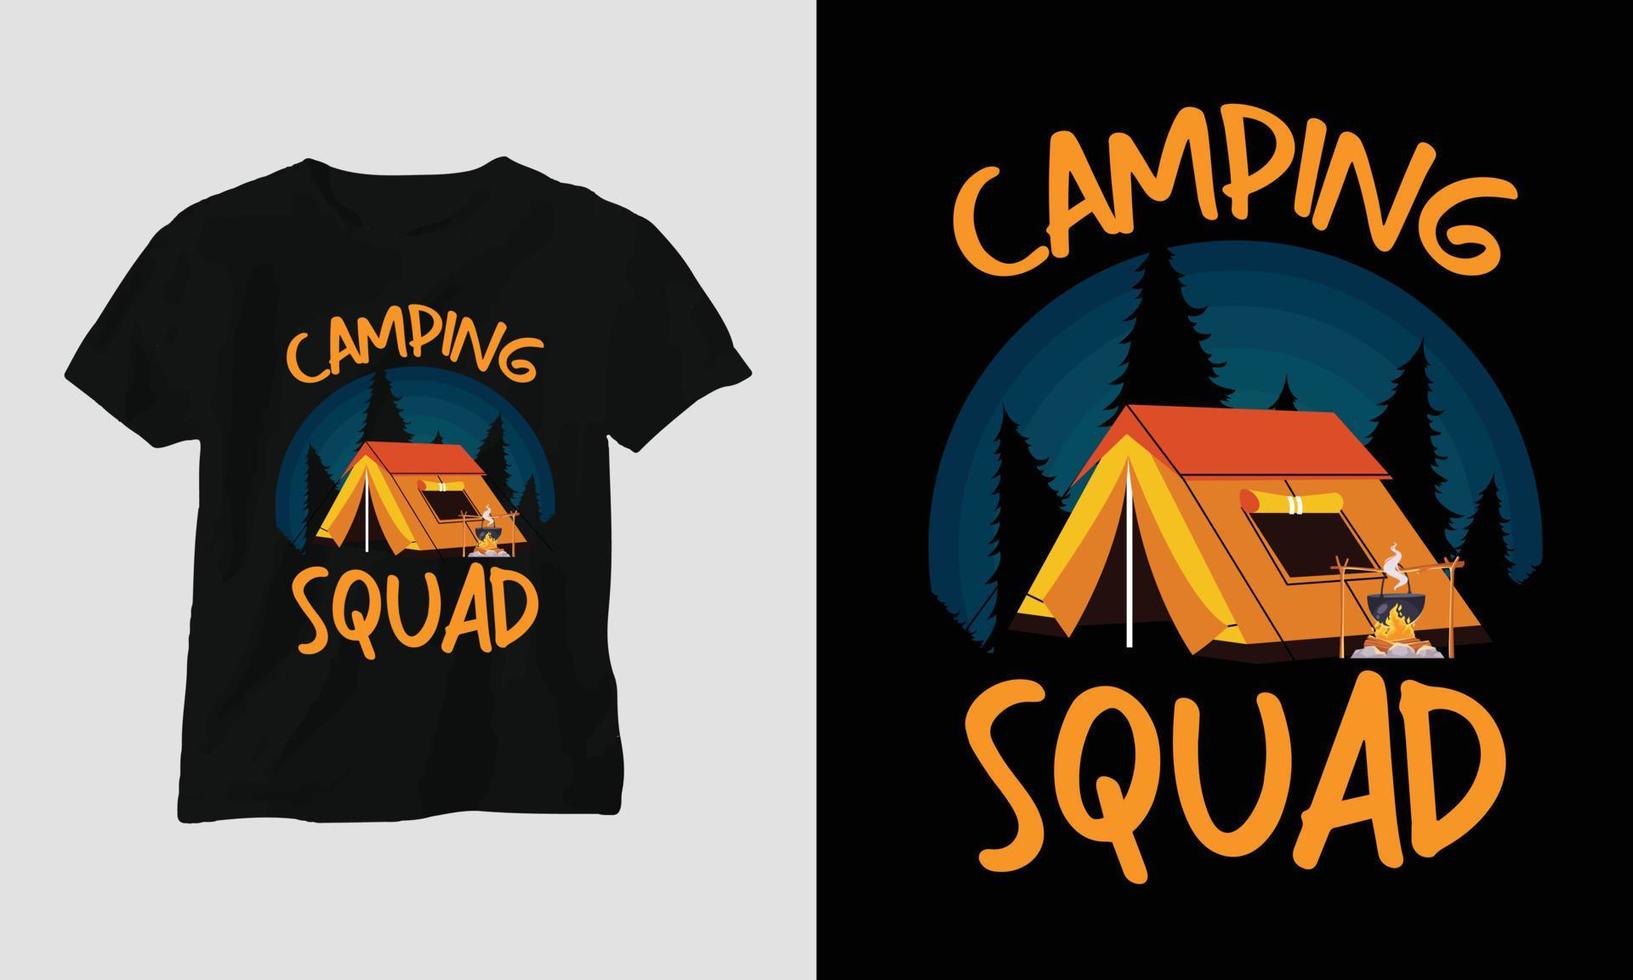 campeggio squadra - campeggio maglietta design vettore